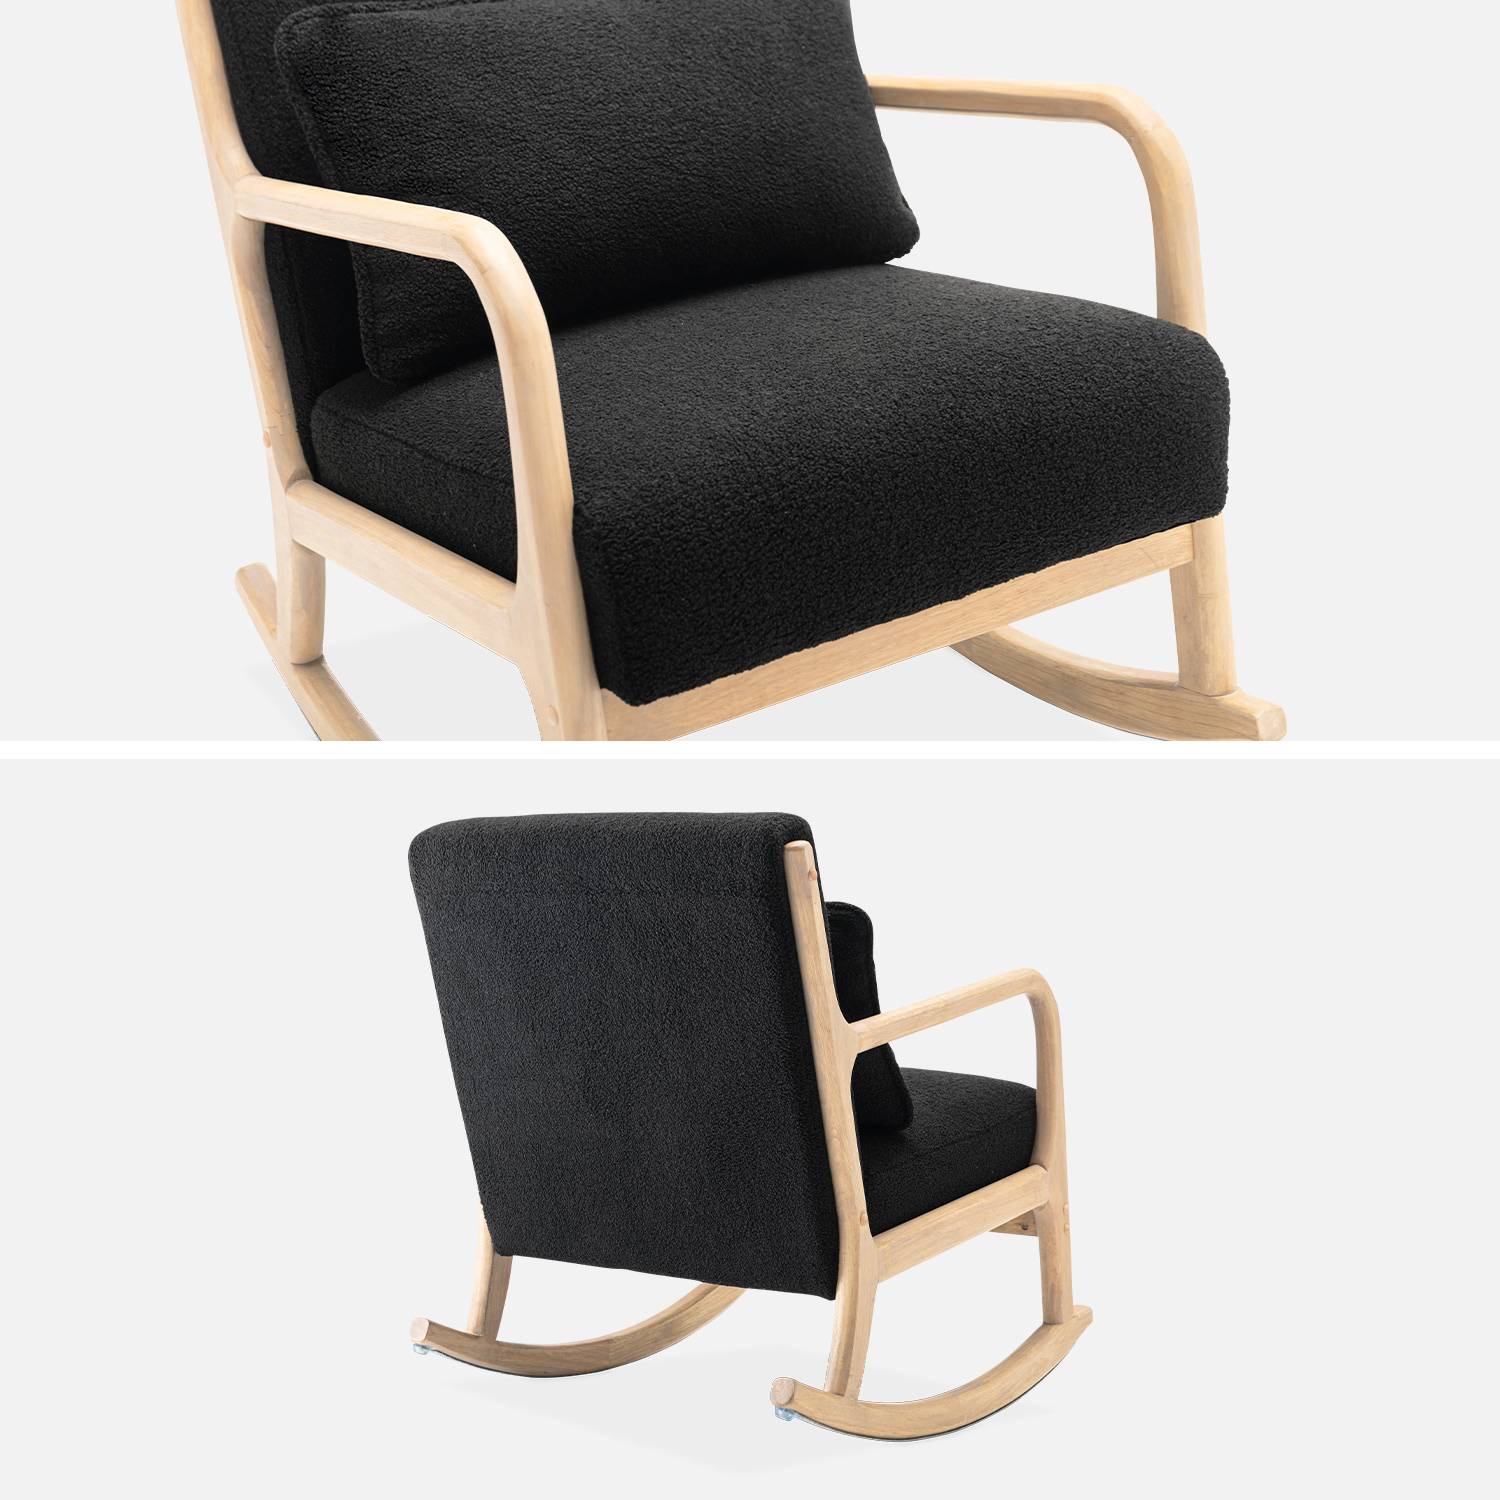 Fauteuil à bascule design en bois et tissu, bouclettes noires, 1 place, rocking chair scandinave Photo5